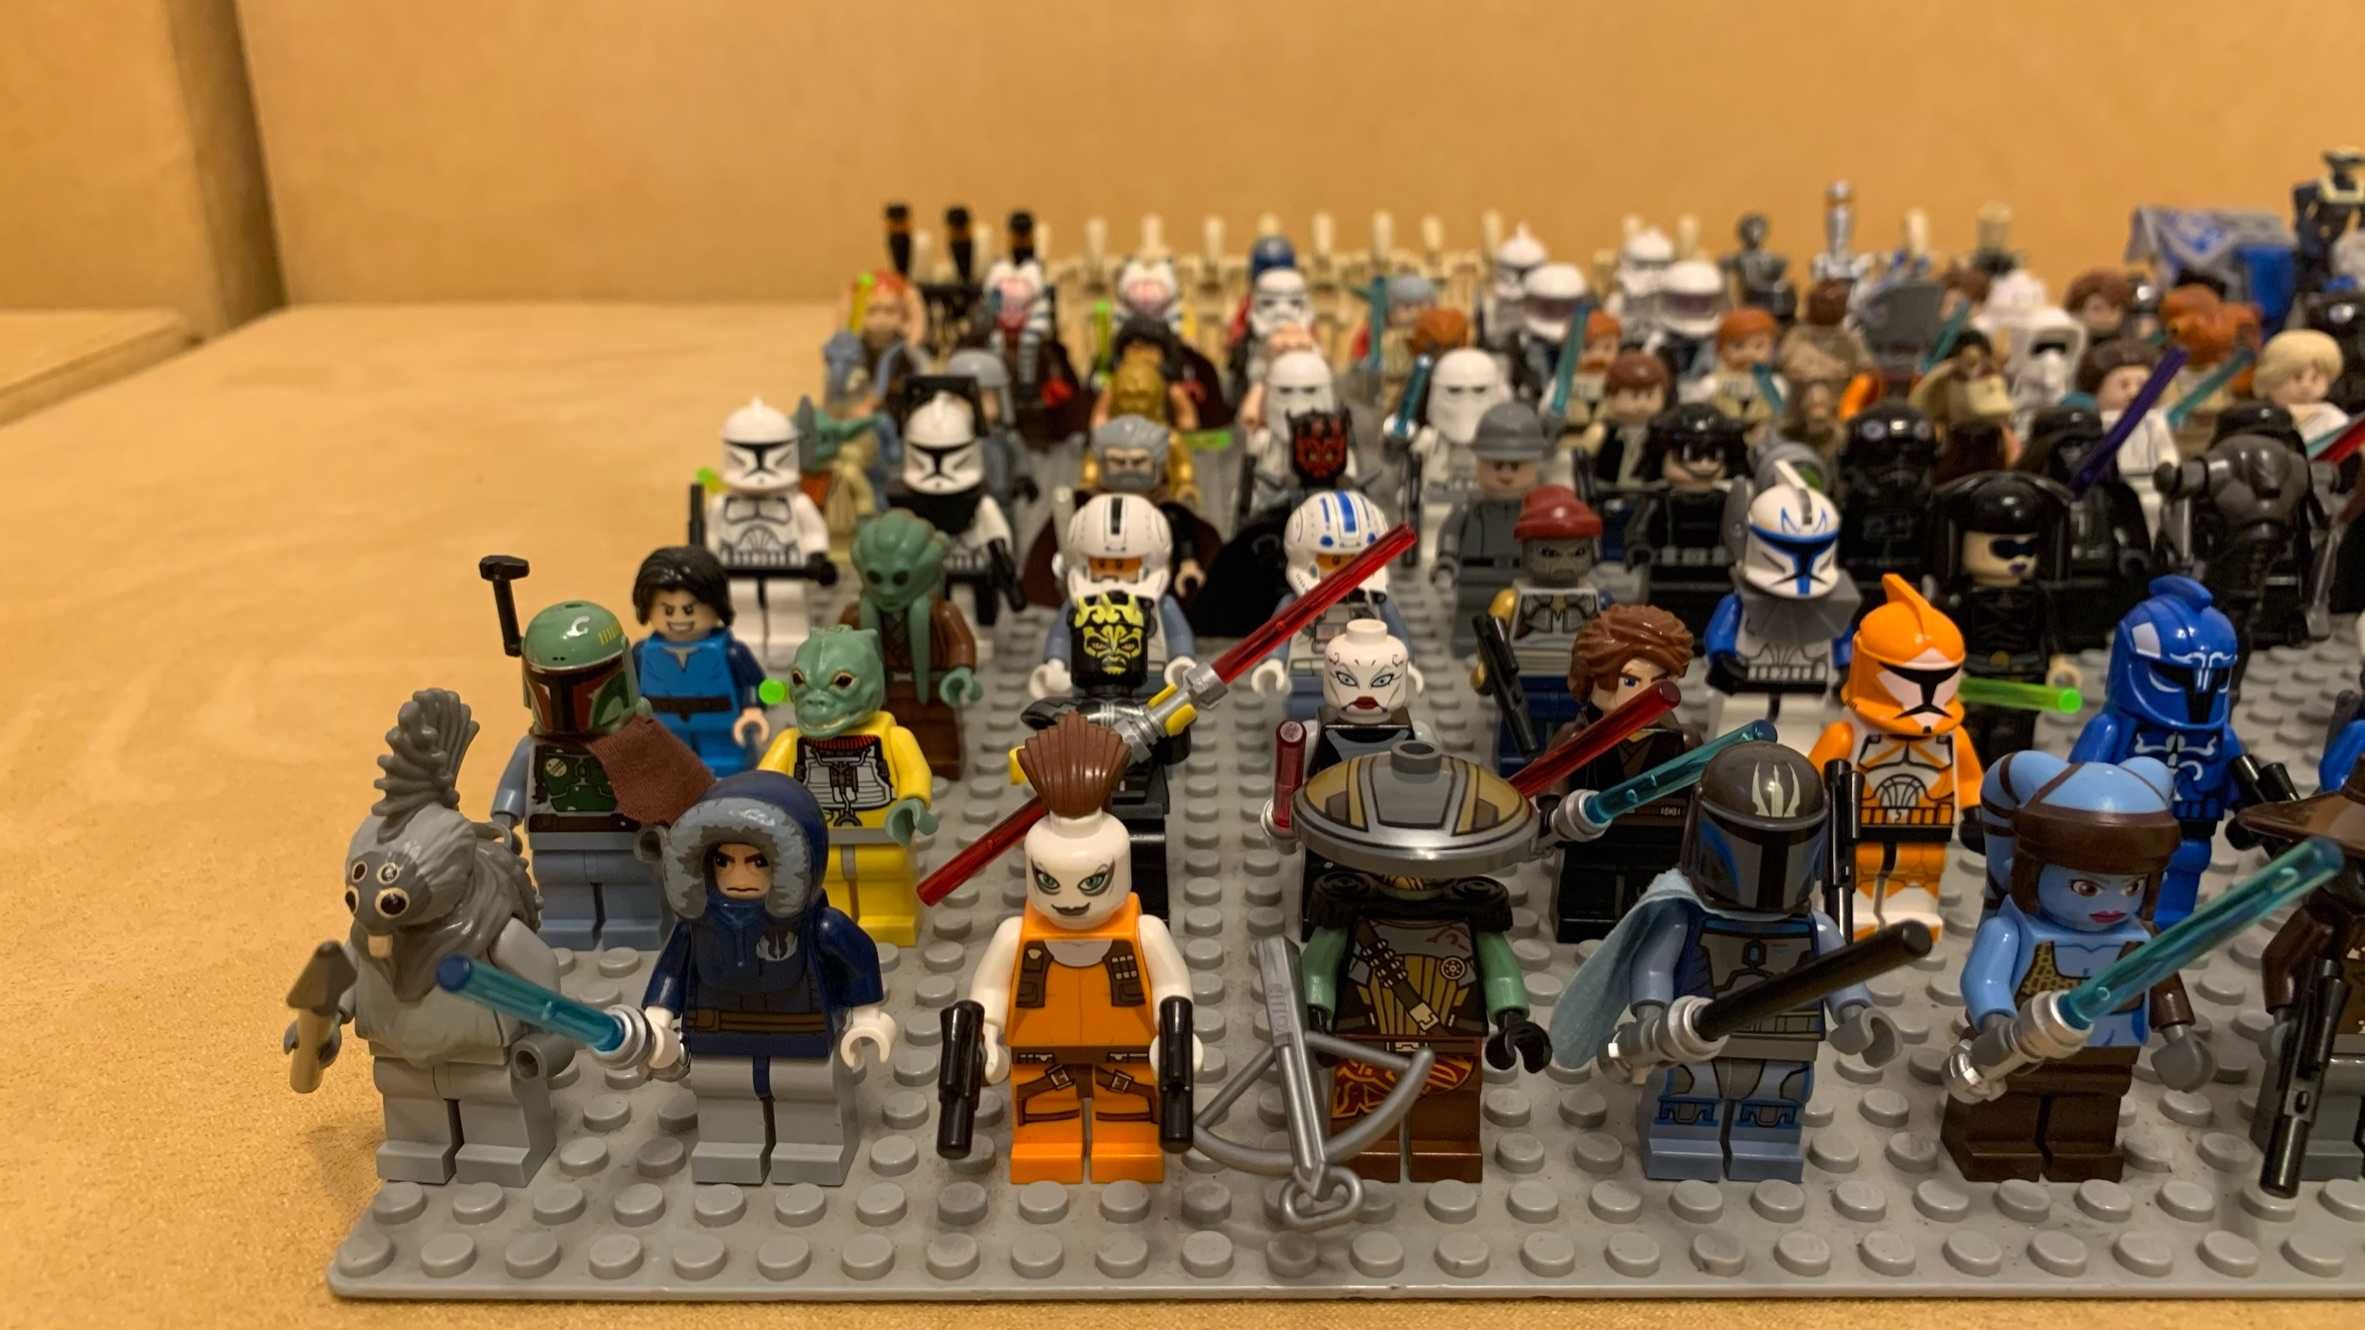 115 Lego Minifigurine  StarWars Colectie valoare piata 1360e ORIGINALE